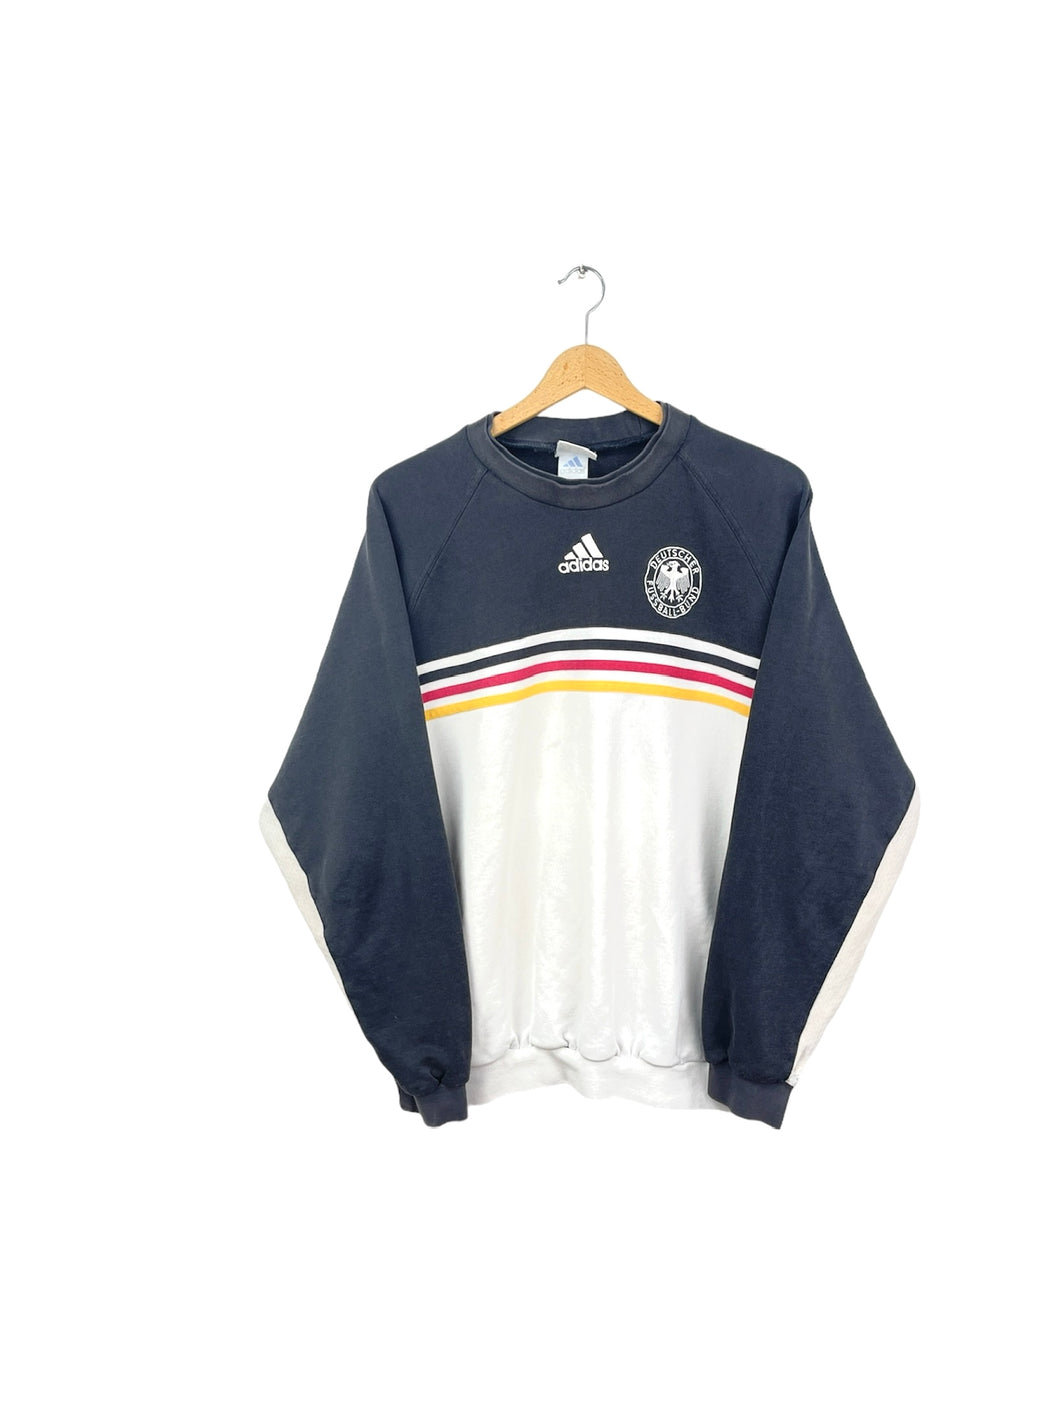 Adidas 1998 Deutschland Sweatshirt - Large